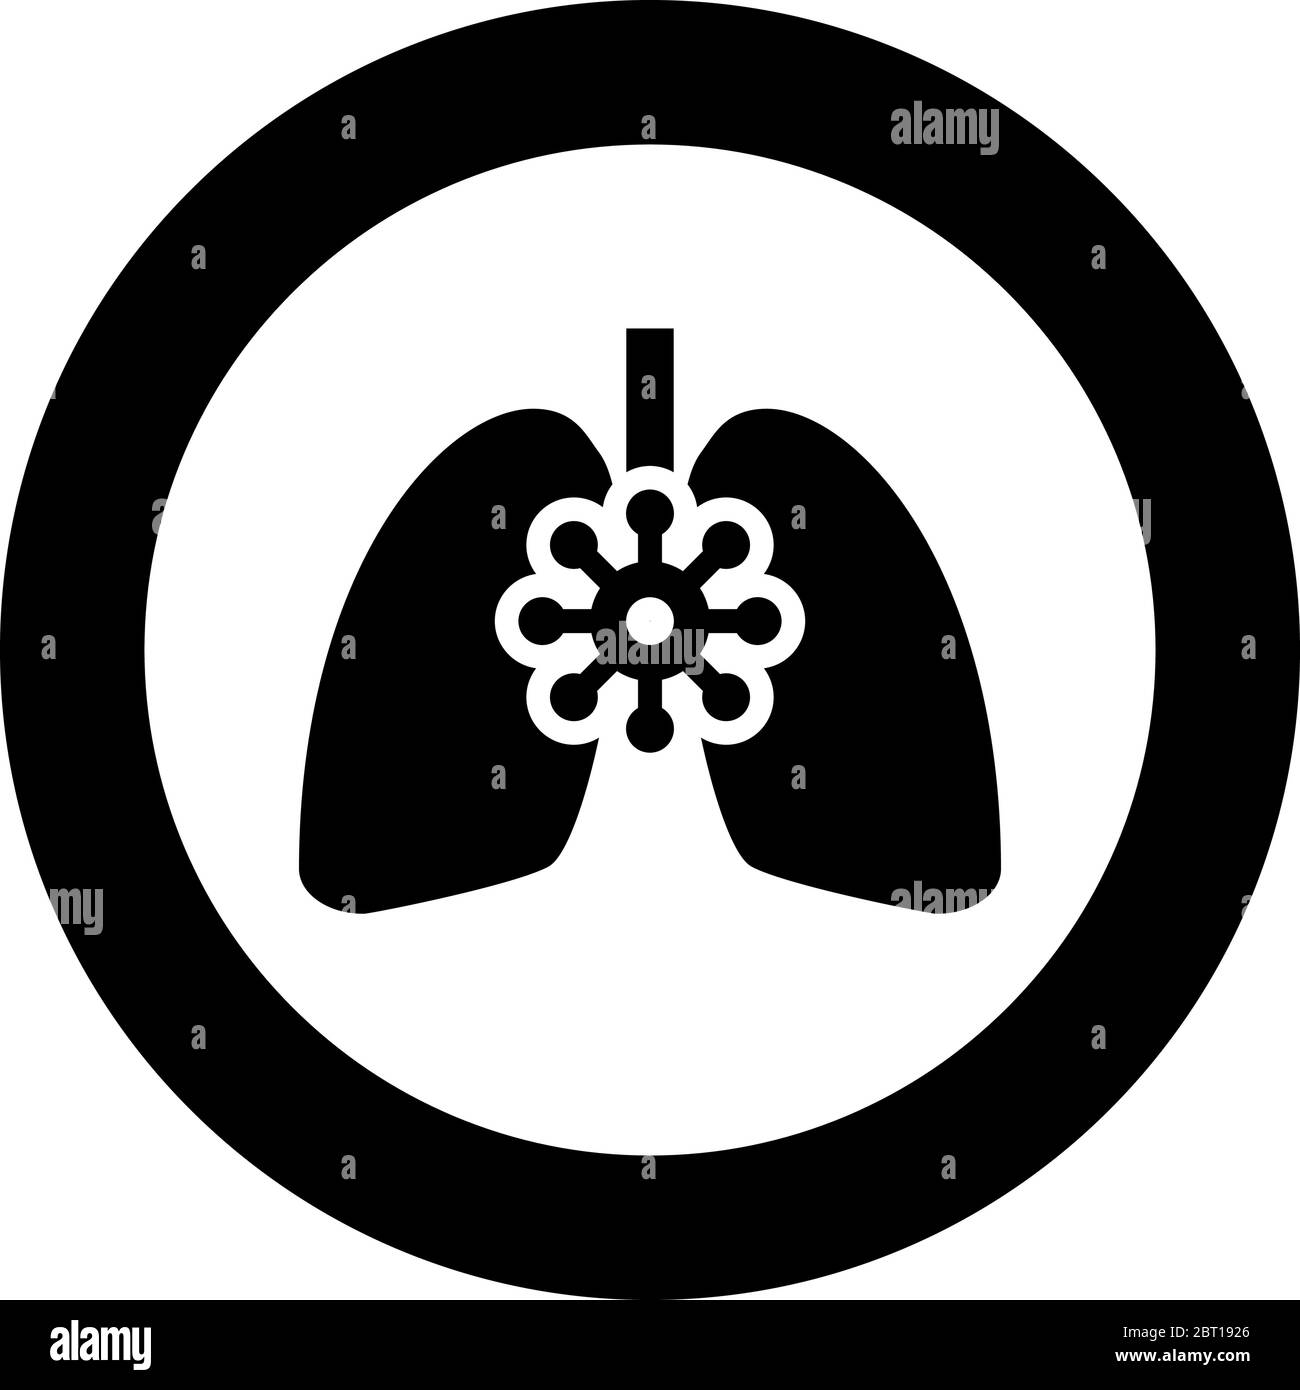 Coronavirus poumons endommagés virus corona atack Eating lung concept Covid 19 infection icône de tuberculose dans le cercle rond illustration de vecteur de couleur noire Illustration de Vecteur